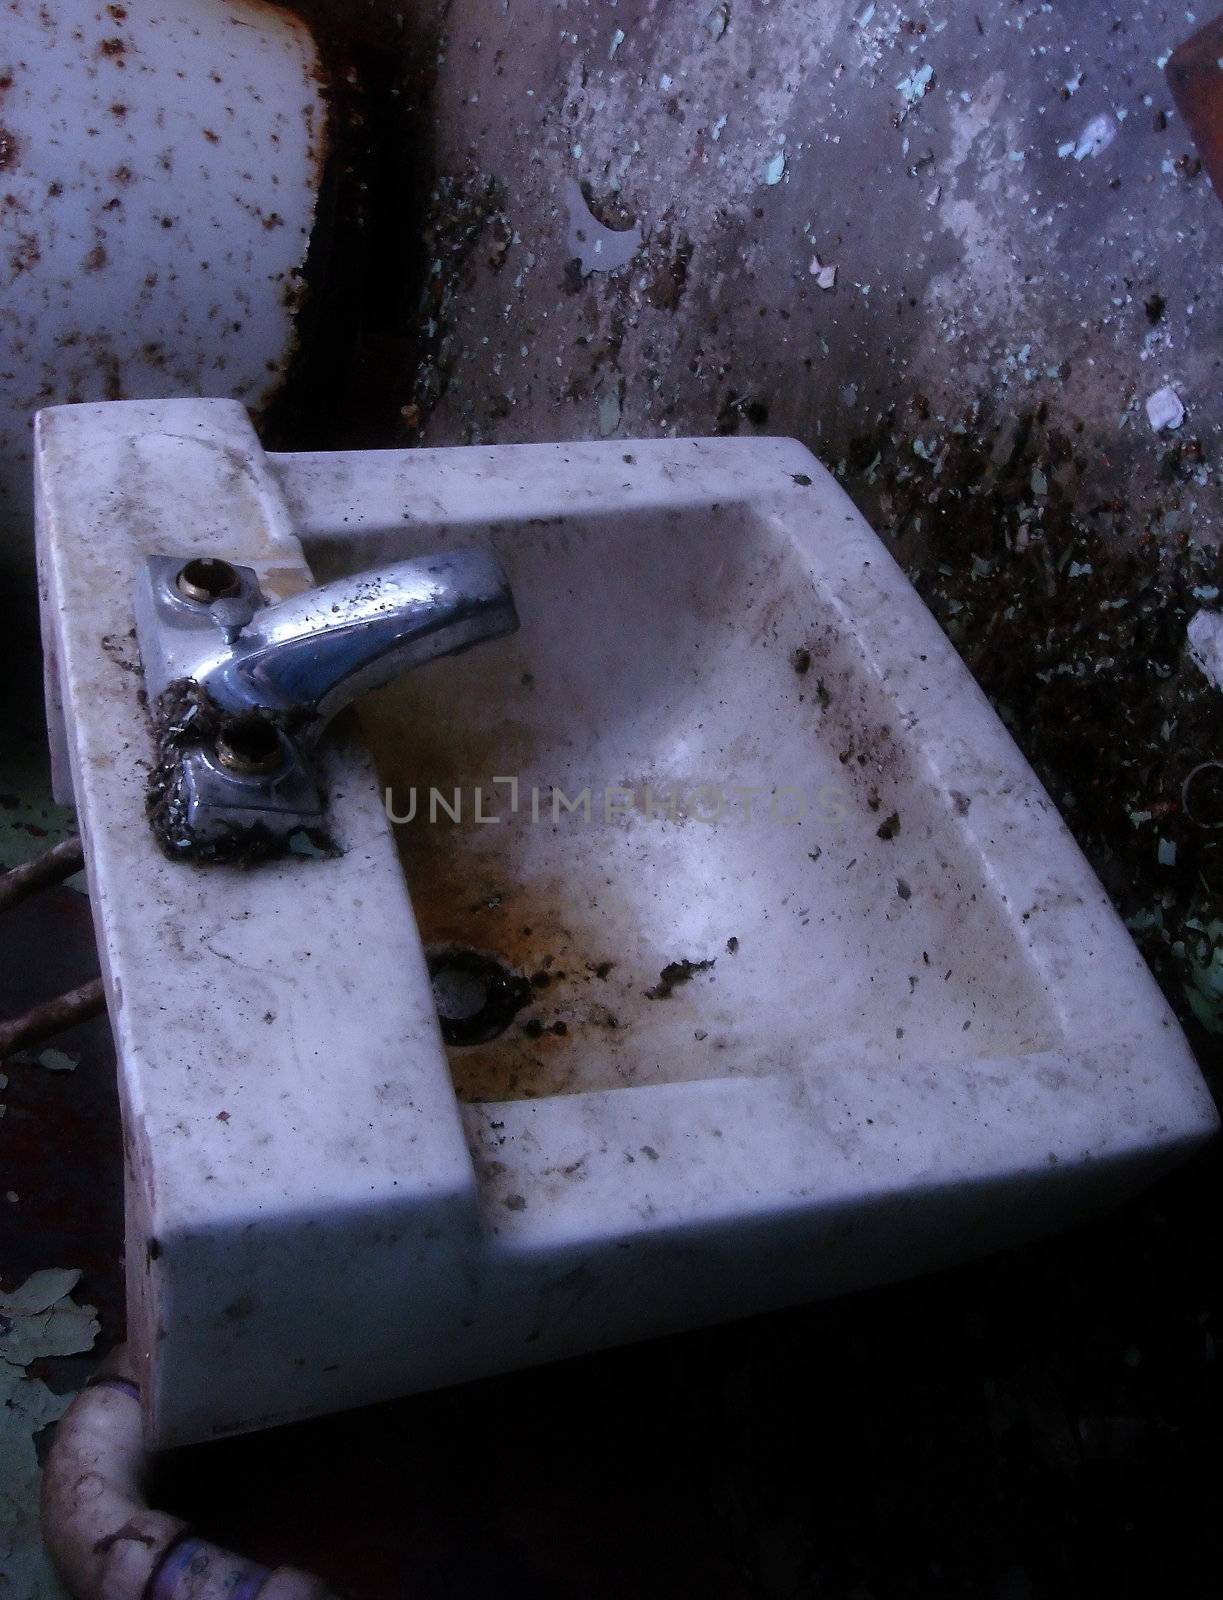 dirty sink by amandaols